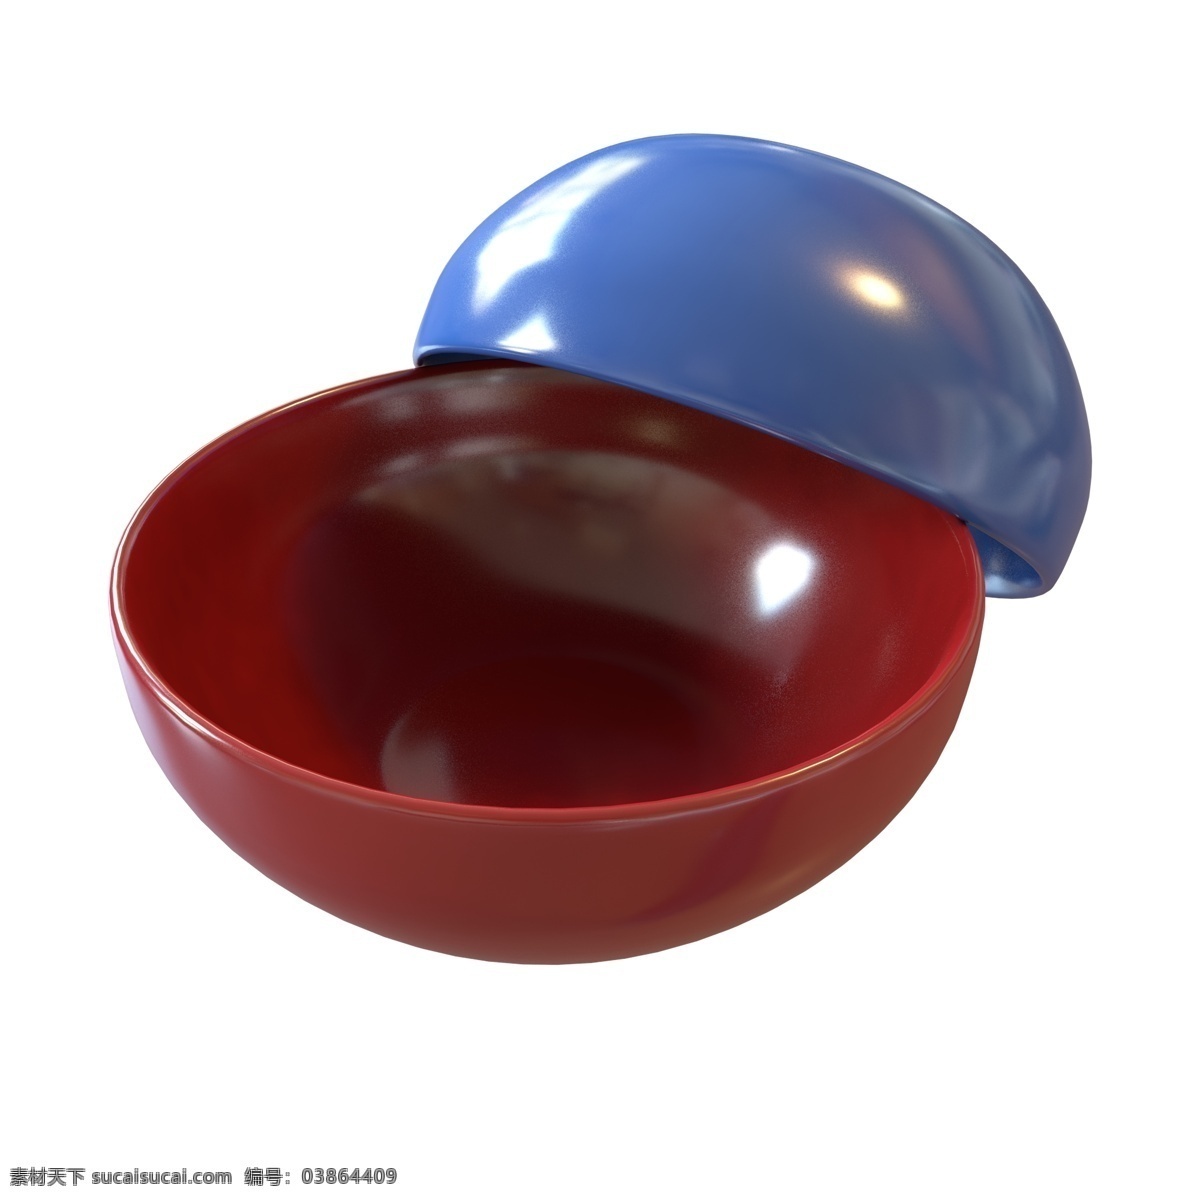 立体 写实 瓷器 碗 配 图 蓝色 蓝色碗 枣红色 枣红色碗 两个碗 立体碗 c4d 碗筷 写真 3d